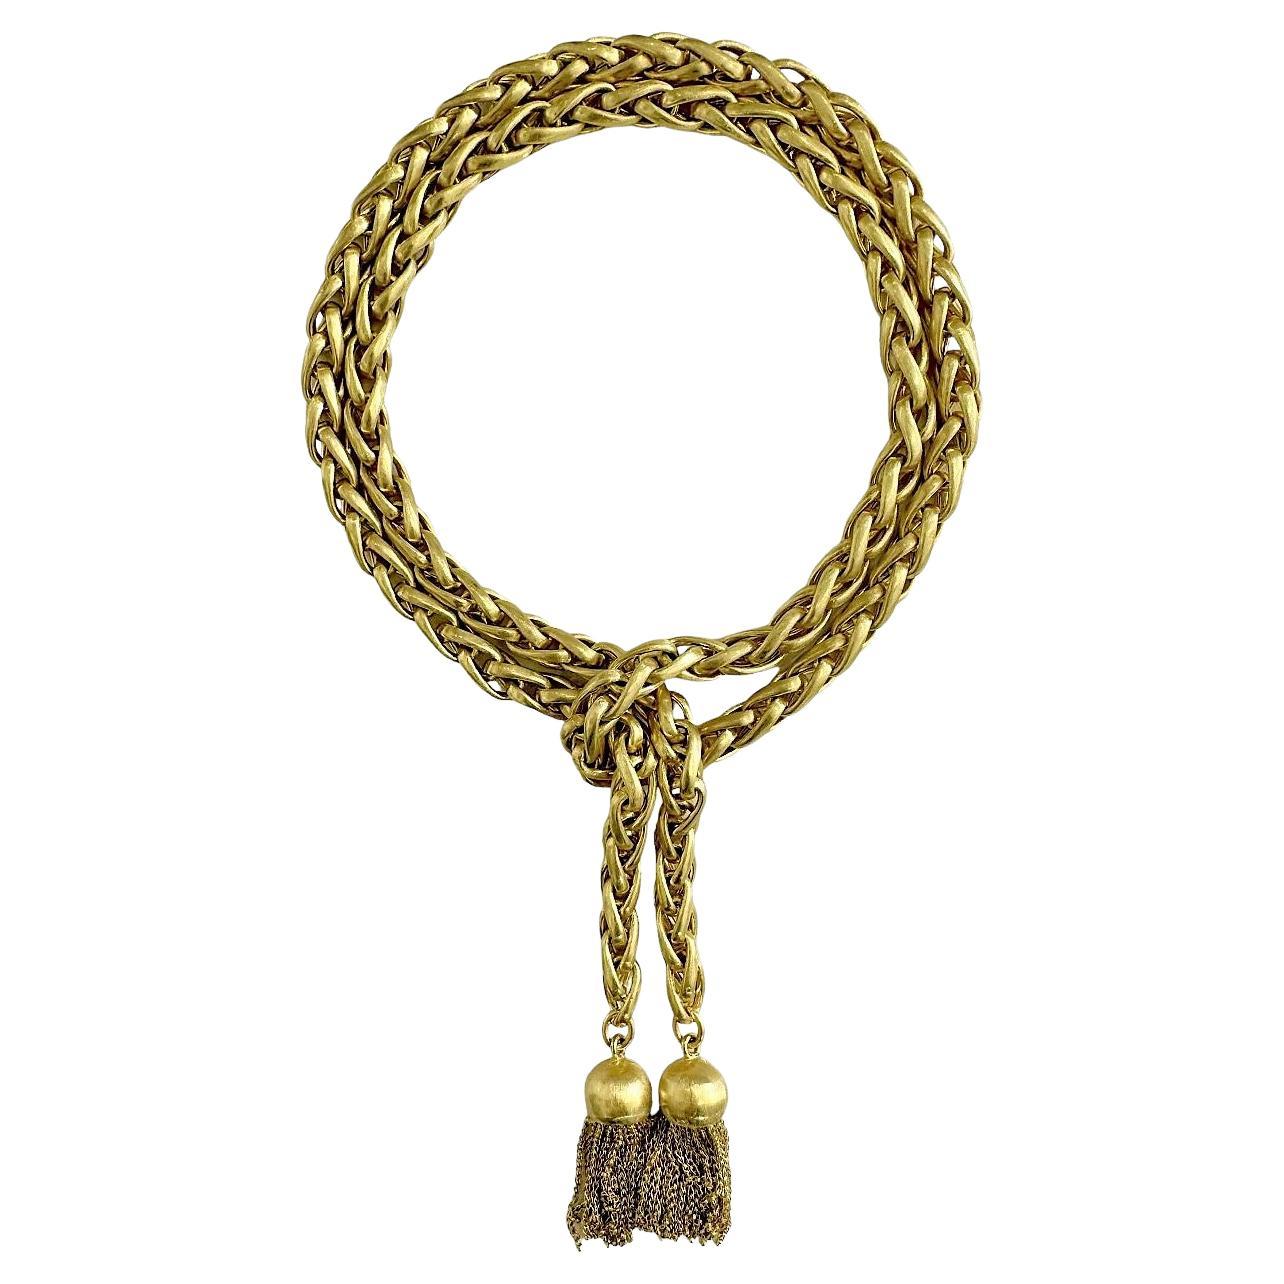 Diese wunderbare Vintage-Weizen-Kettenglied-Lariat-Halskette ist die Verkörperung von 